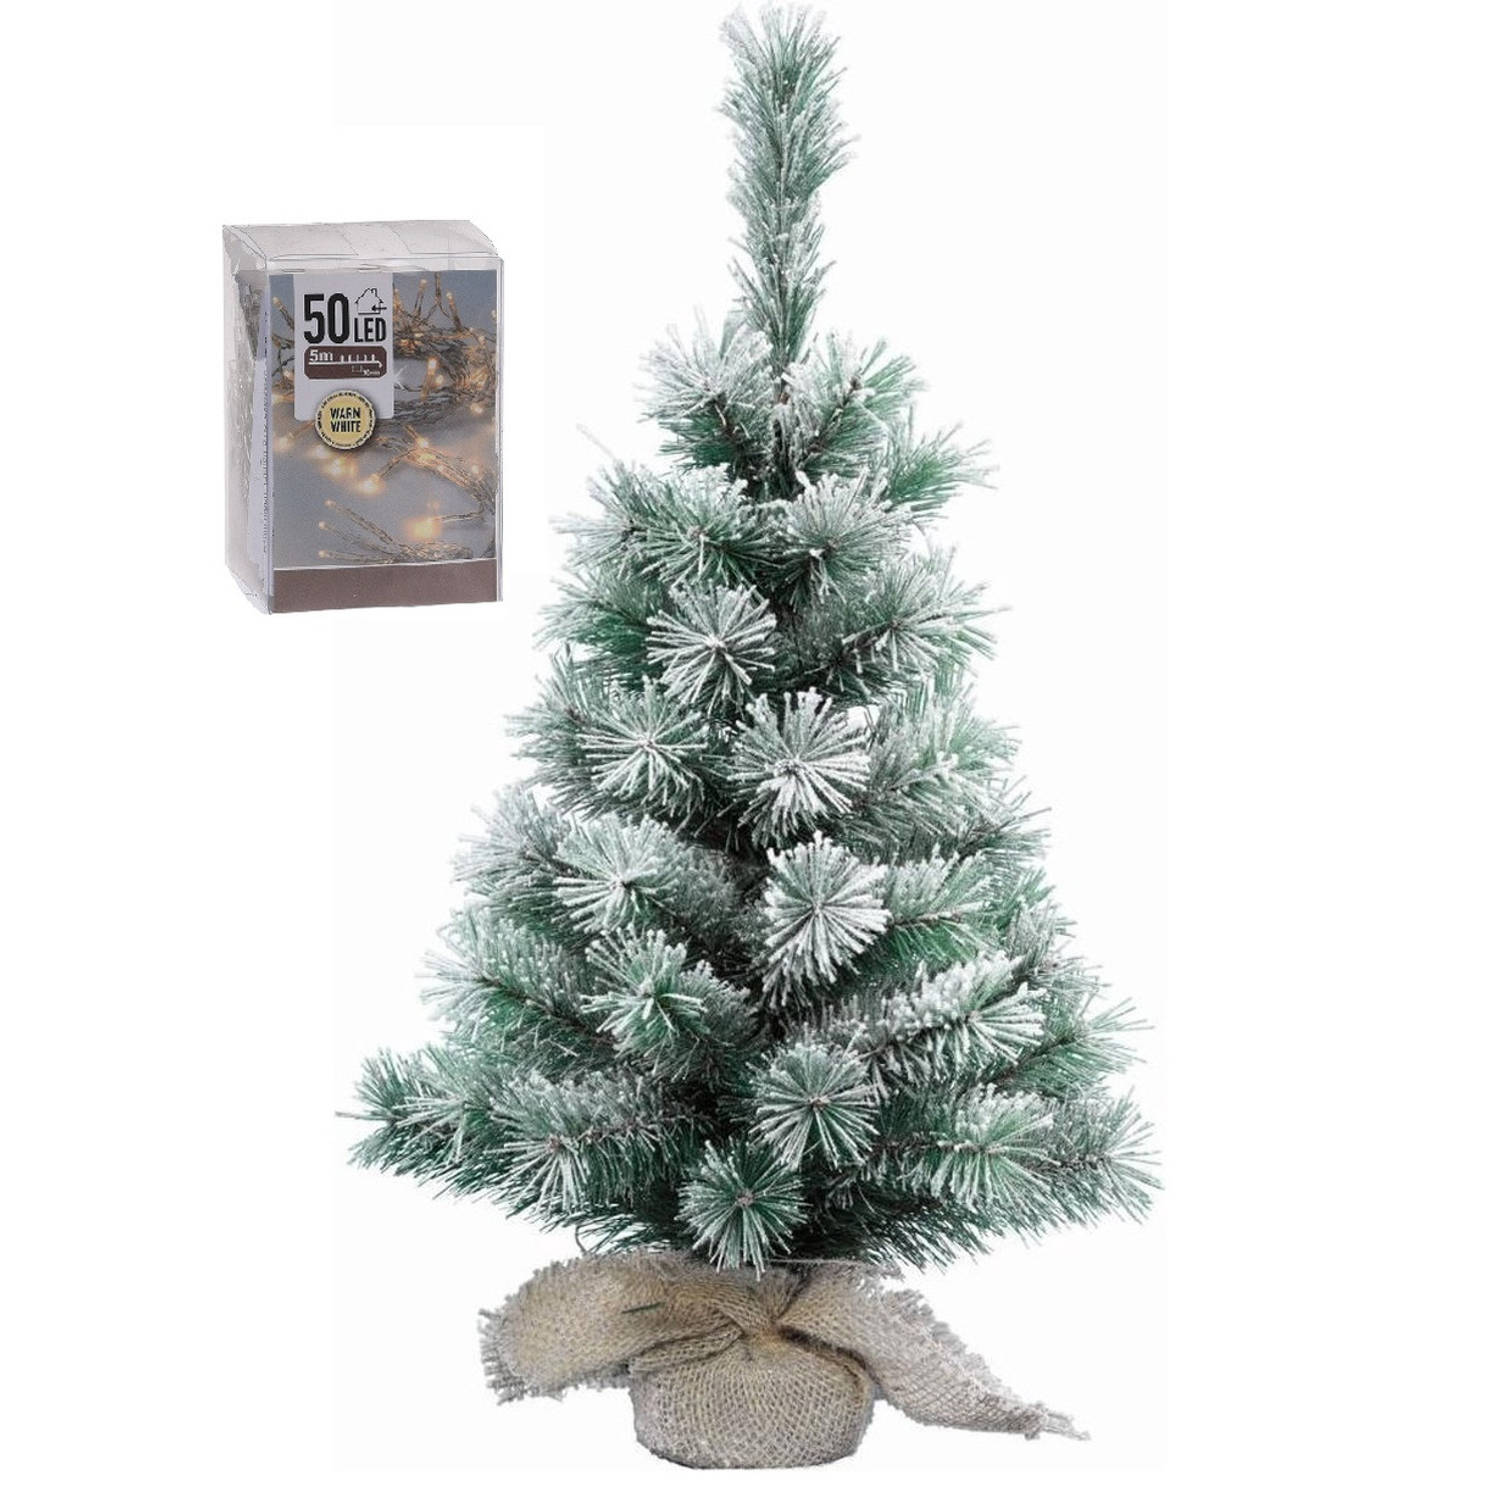 Kunst Kerstboom Met Sneeuw 60 Cm In Jute Zak Inclusief 50 Warm Witte Lampjes Kunstkerstboom